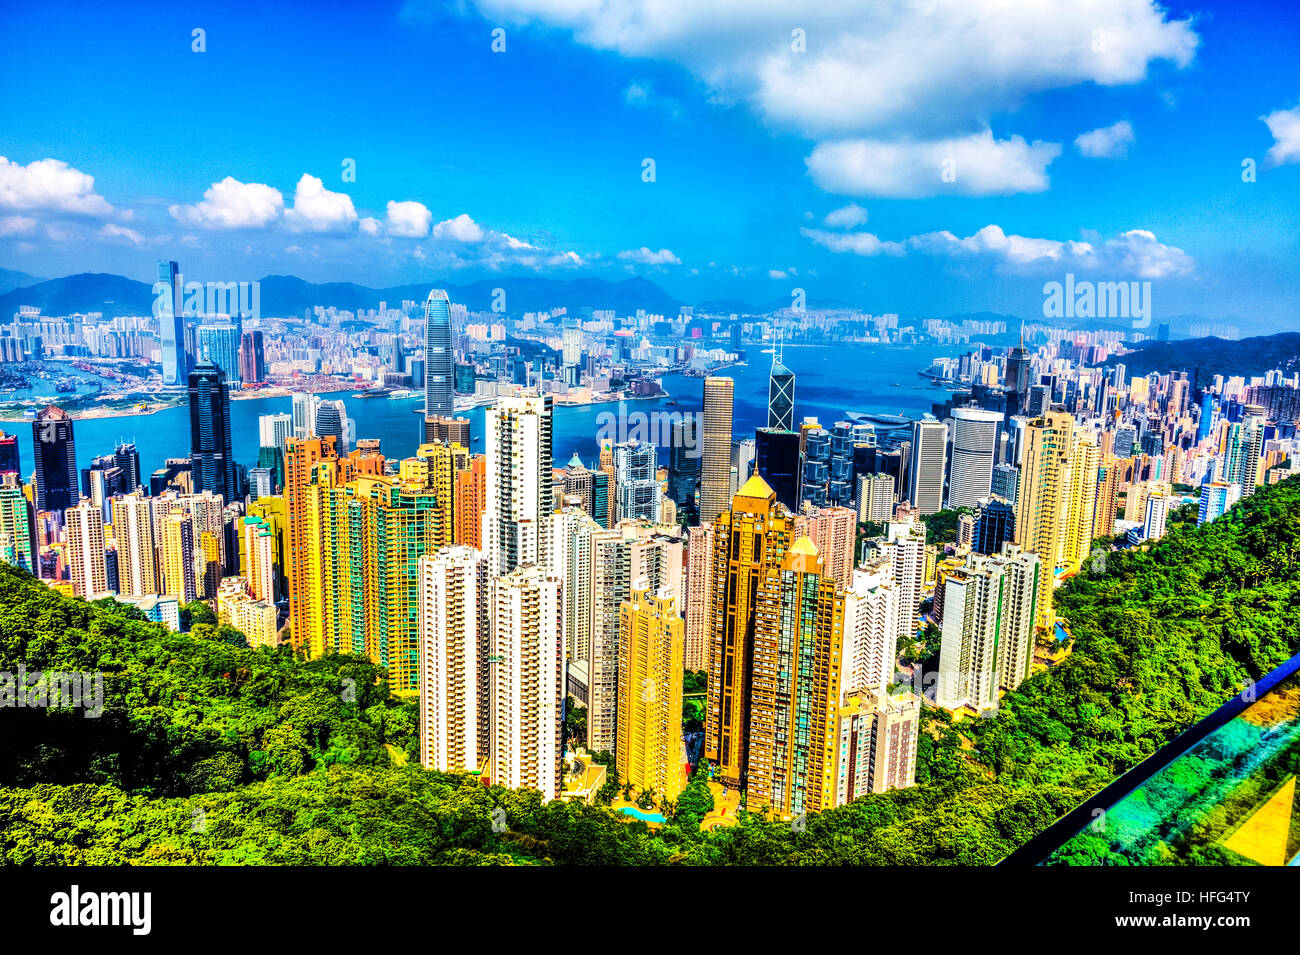 Hong Kong Island Peak Lookout au centre-ville de Kowloon Victoria Harbour Apartments sky scrapers vista afficher des bâtiments Banque D'Images